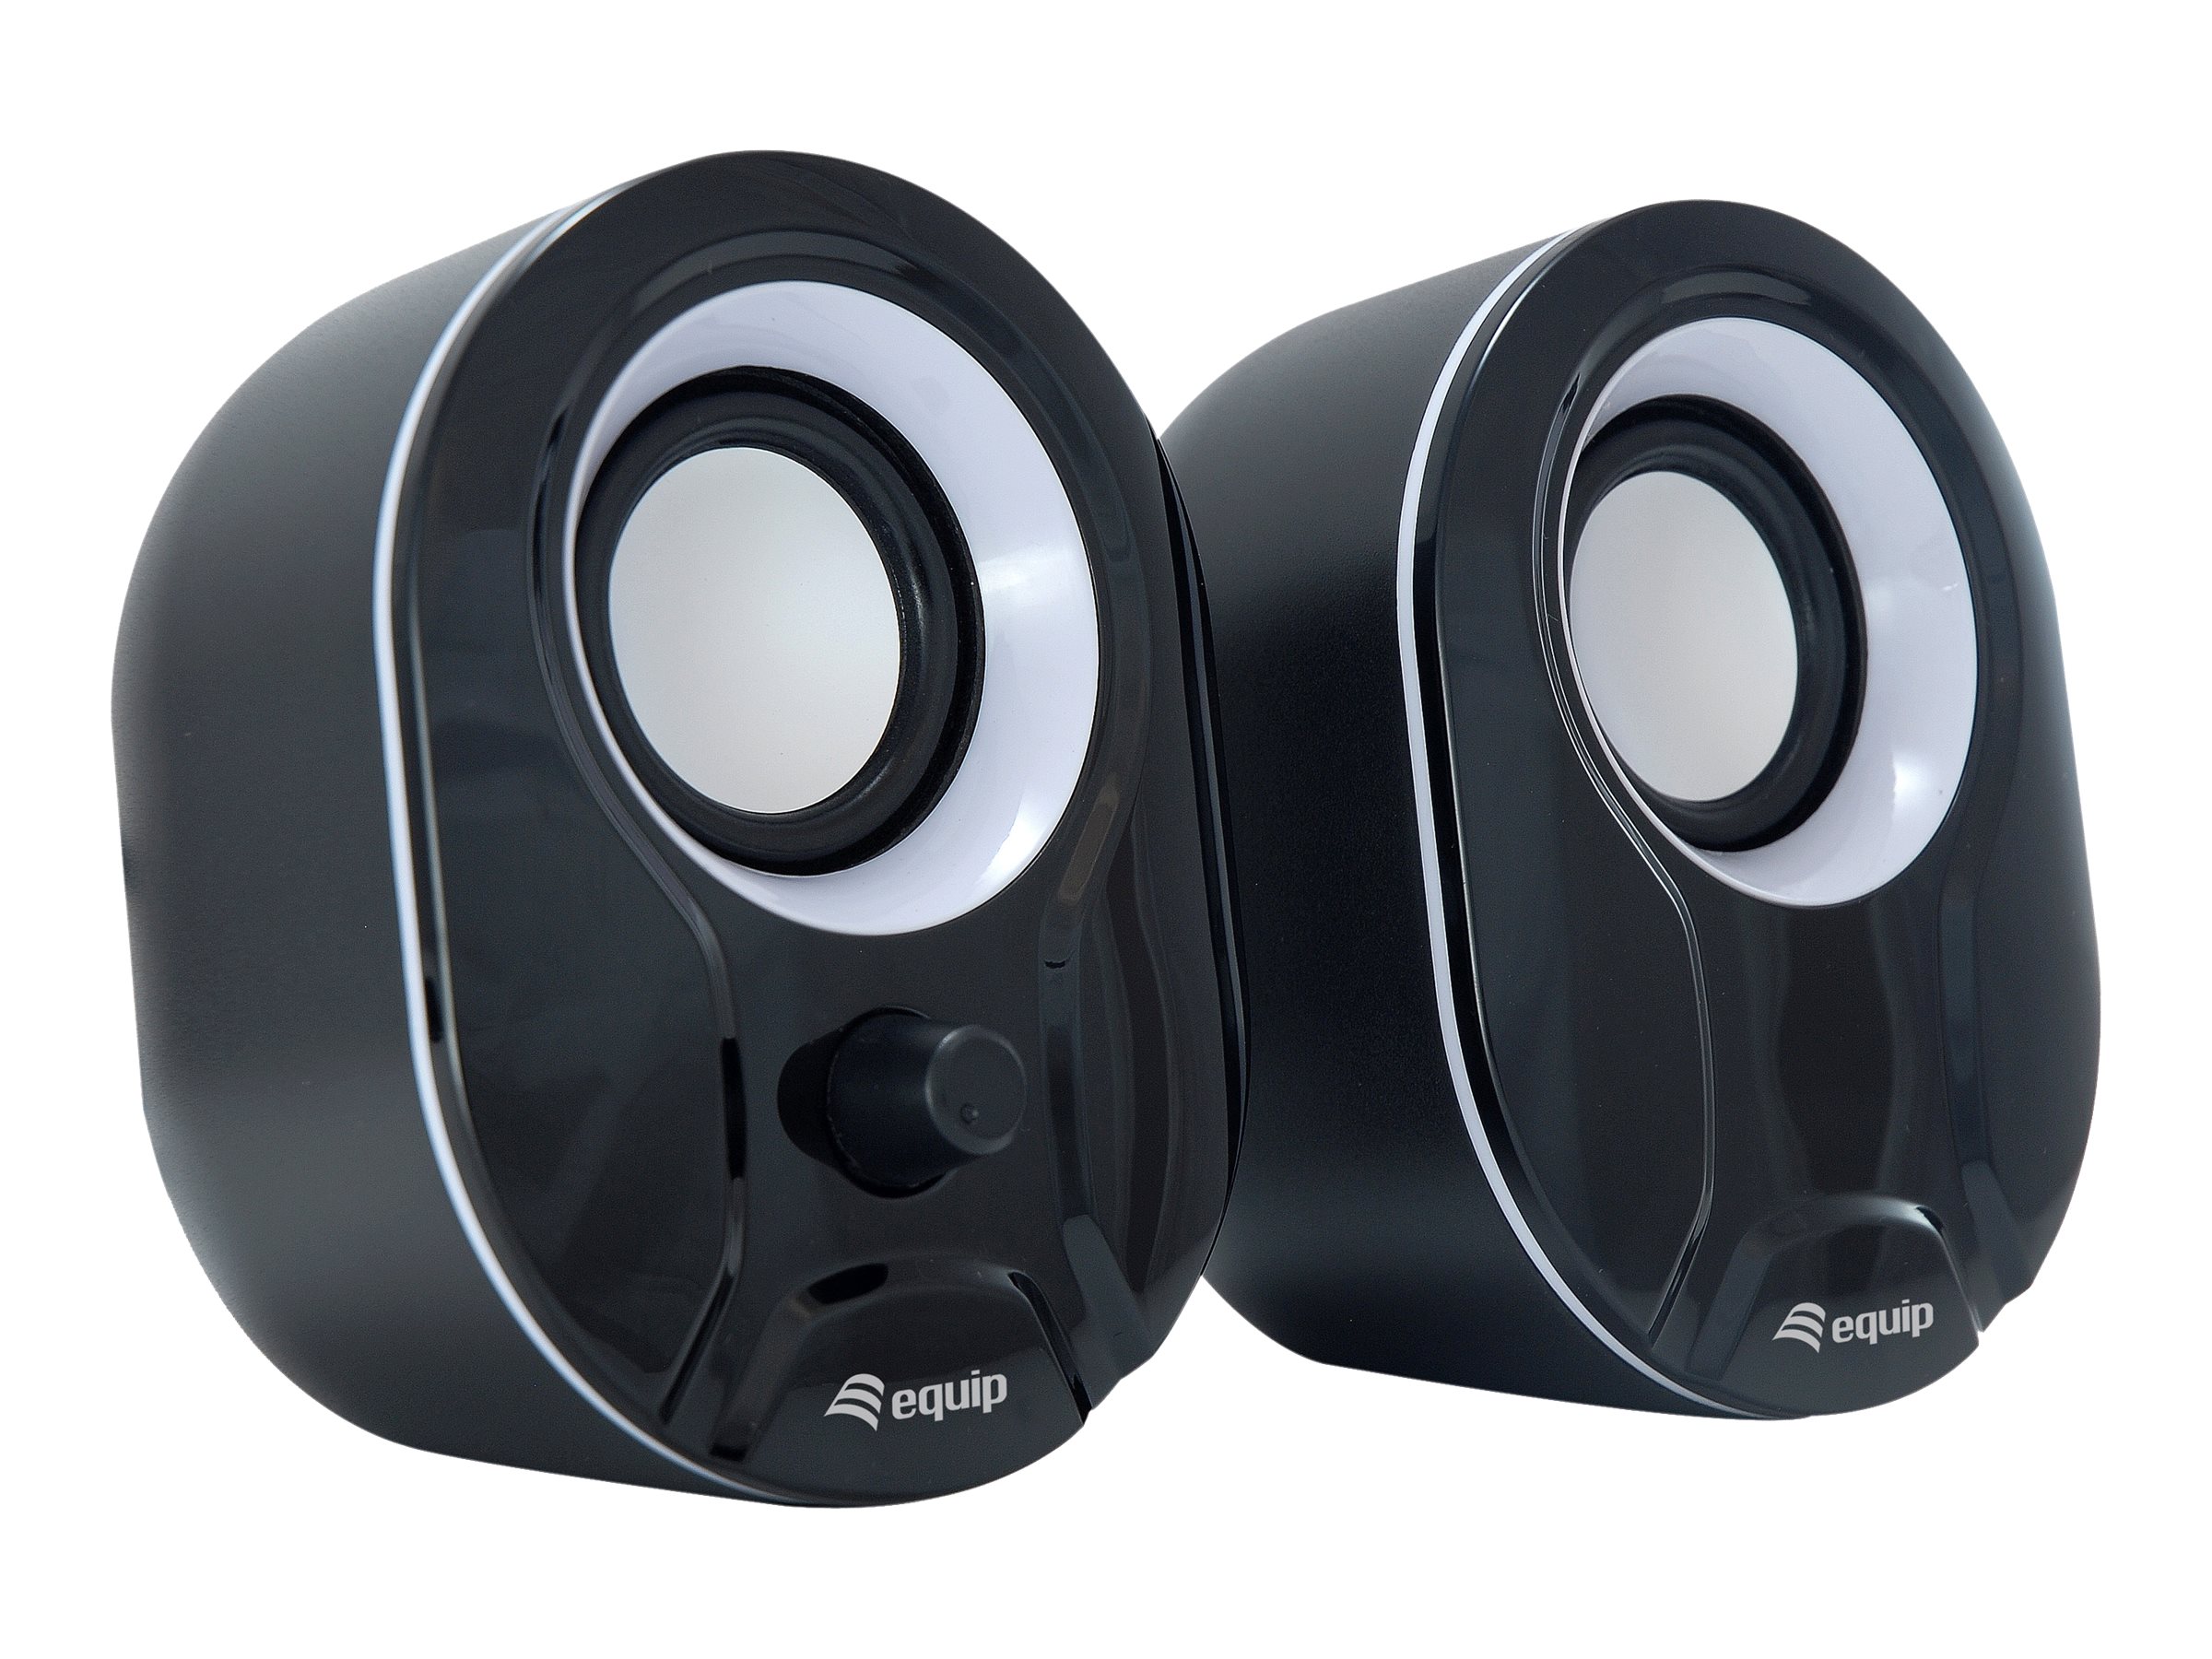 equip Stereo 2.0 - Lautsprecher - für PC - 3 Watt - Kabelgebunden